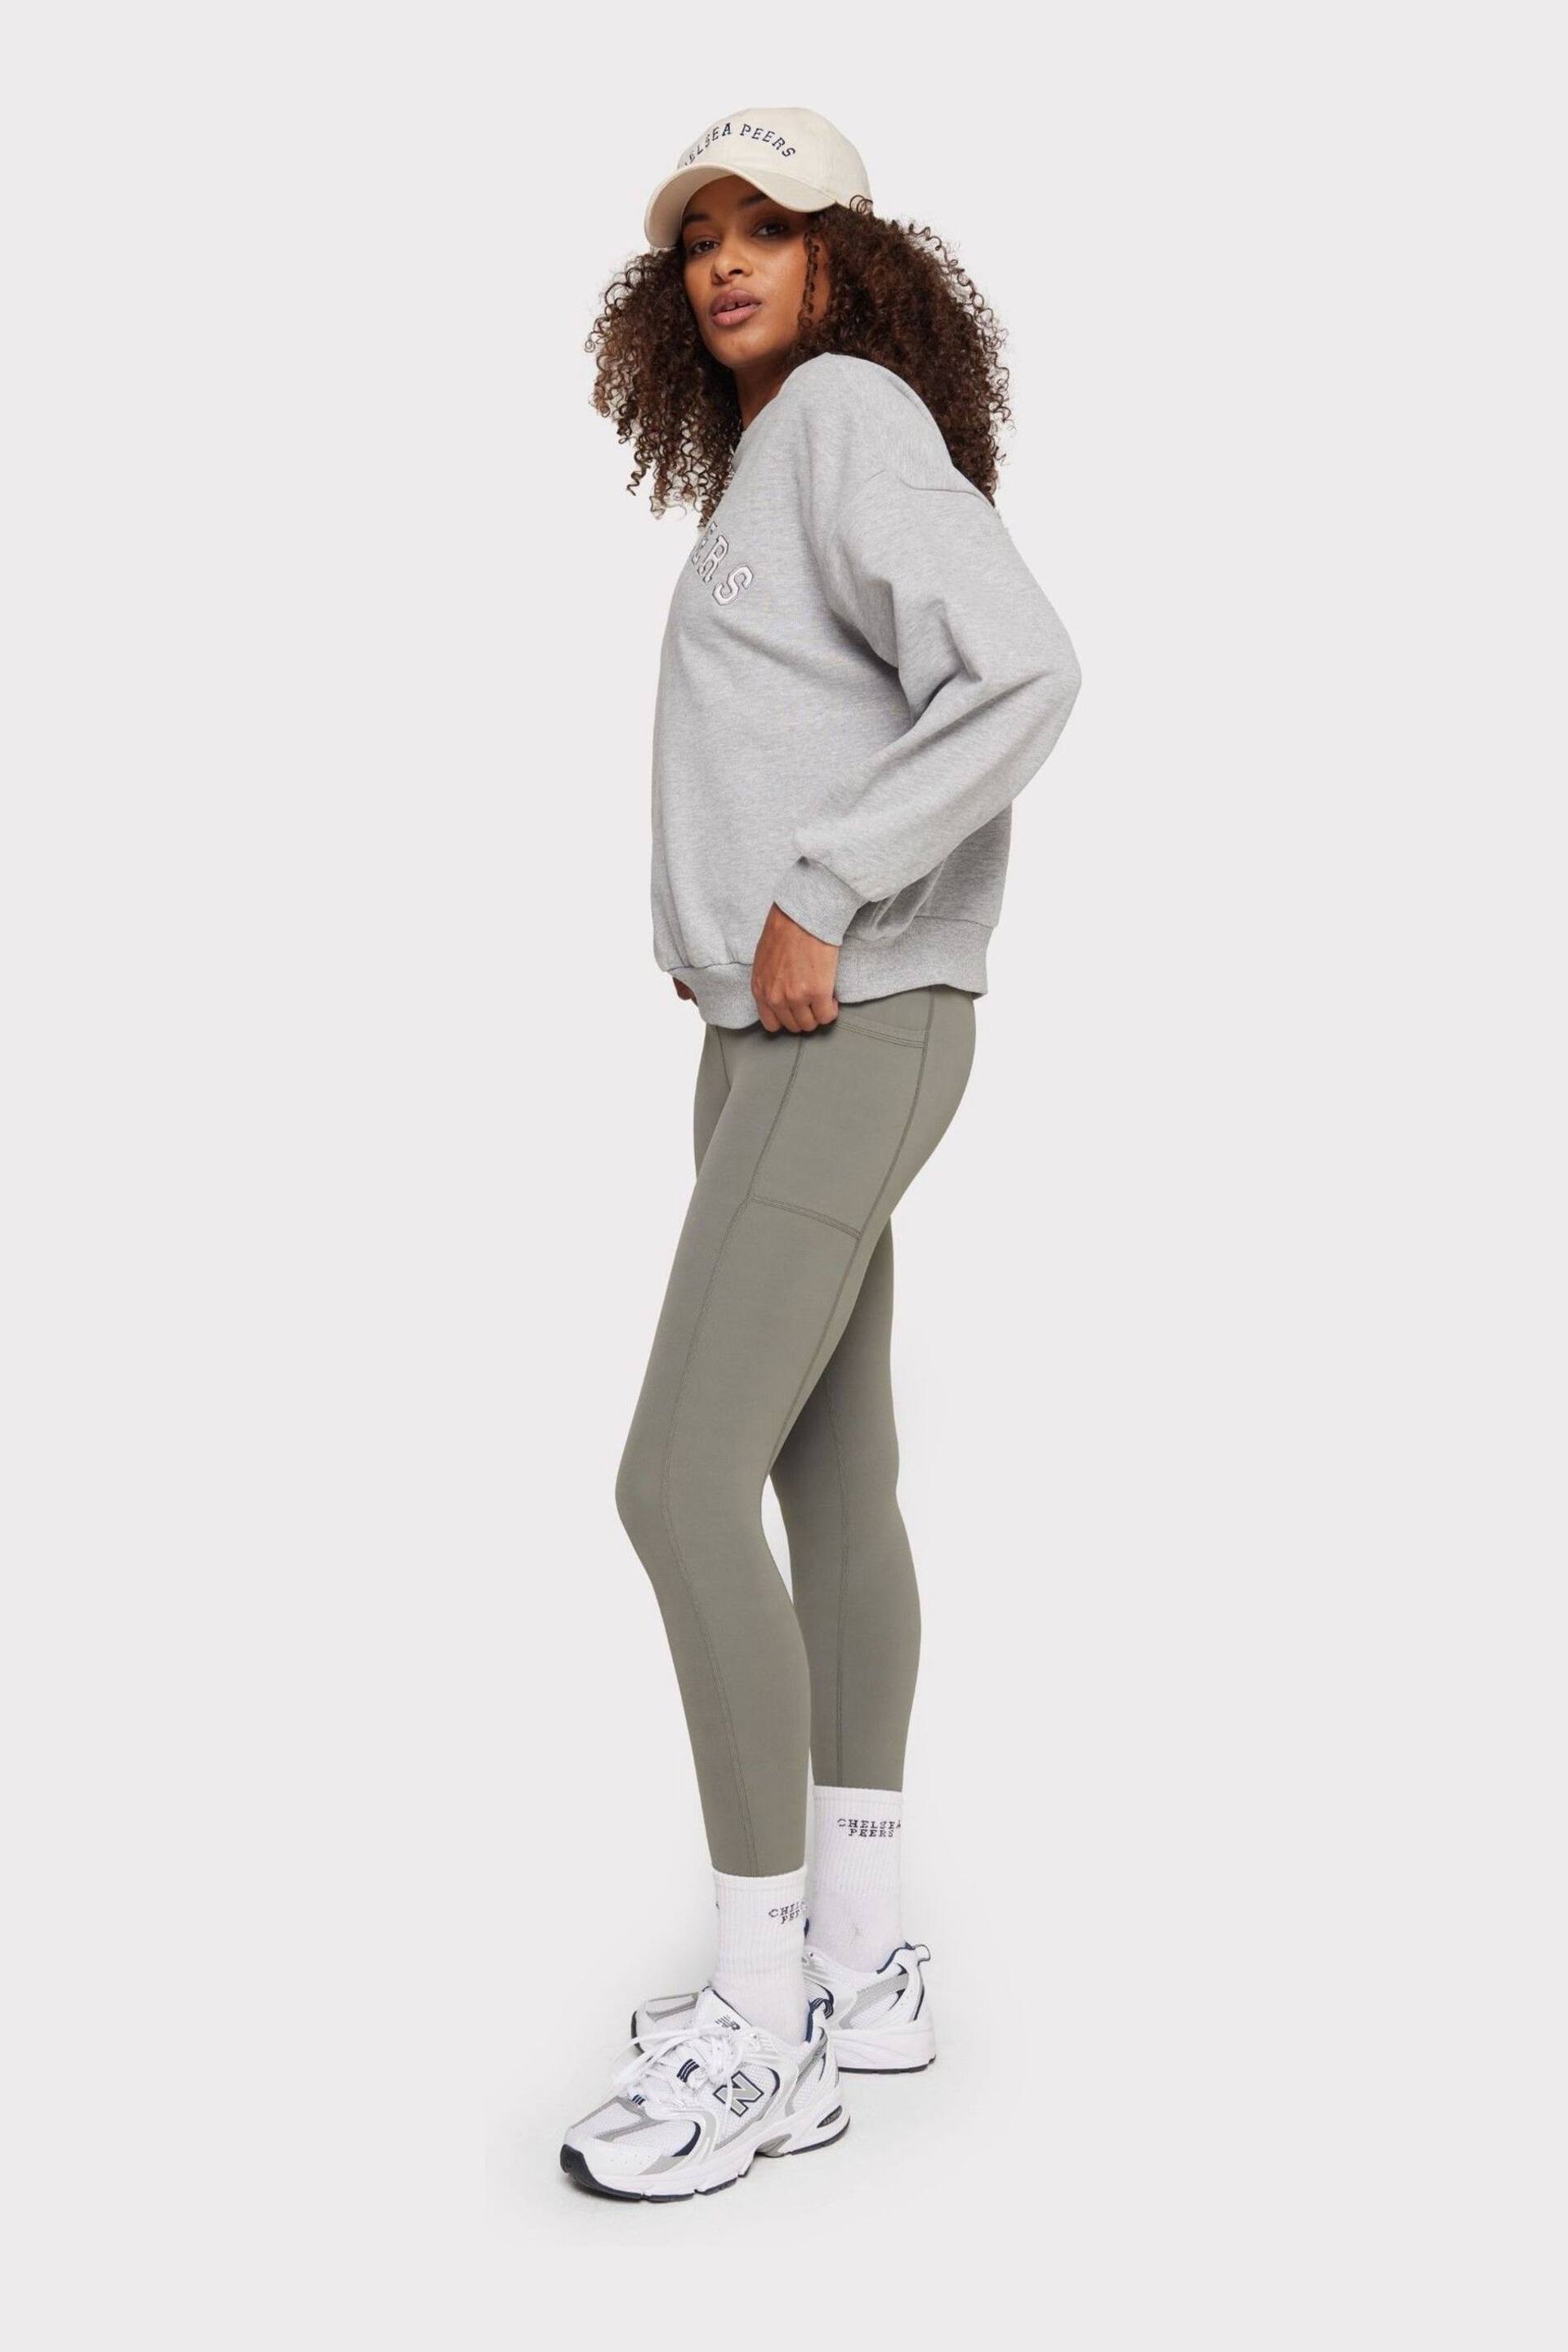 Chelsea Peers Grey Organic Cotton Logo Sweatshirt - Image 5 of 5